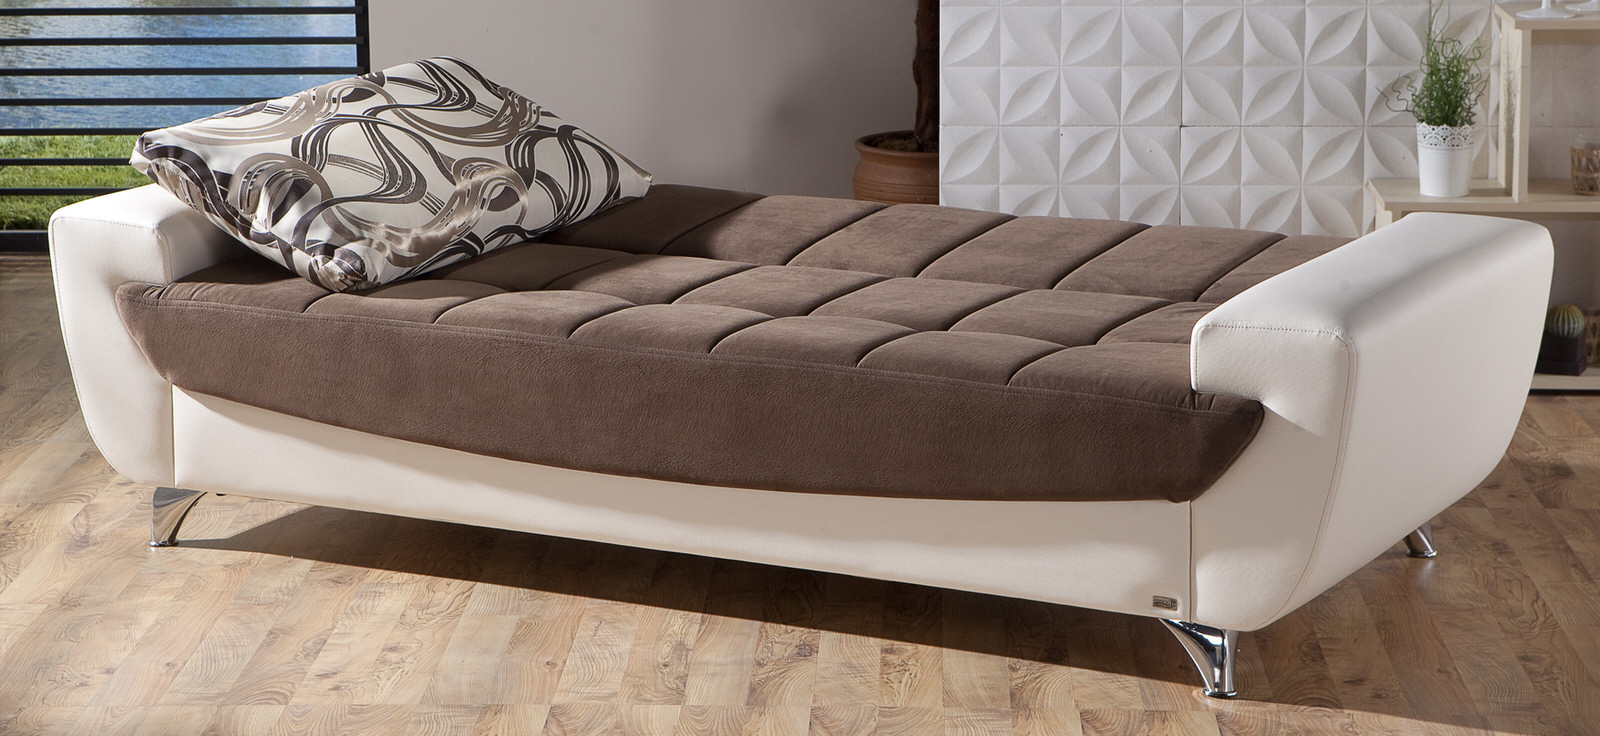 designer high quality sofa bed